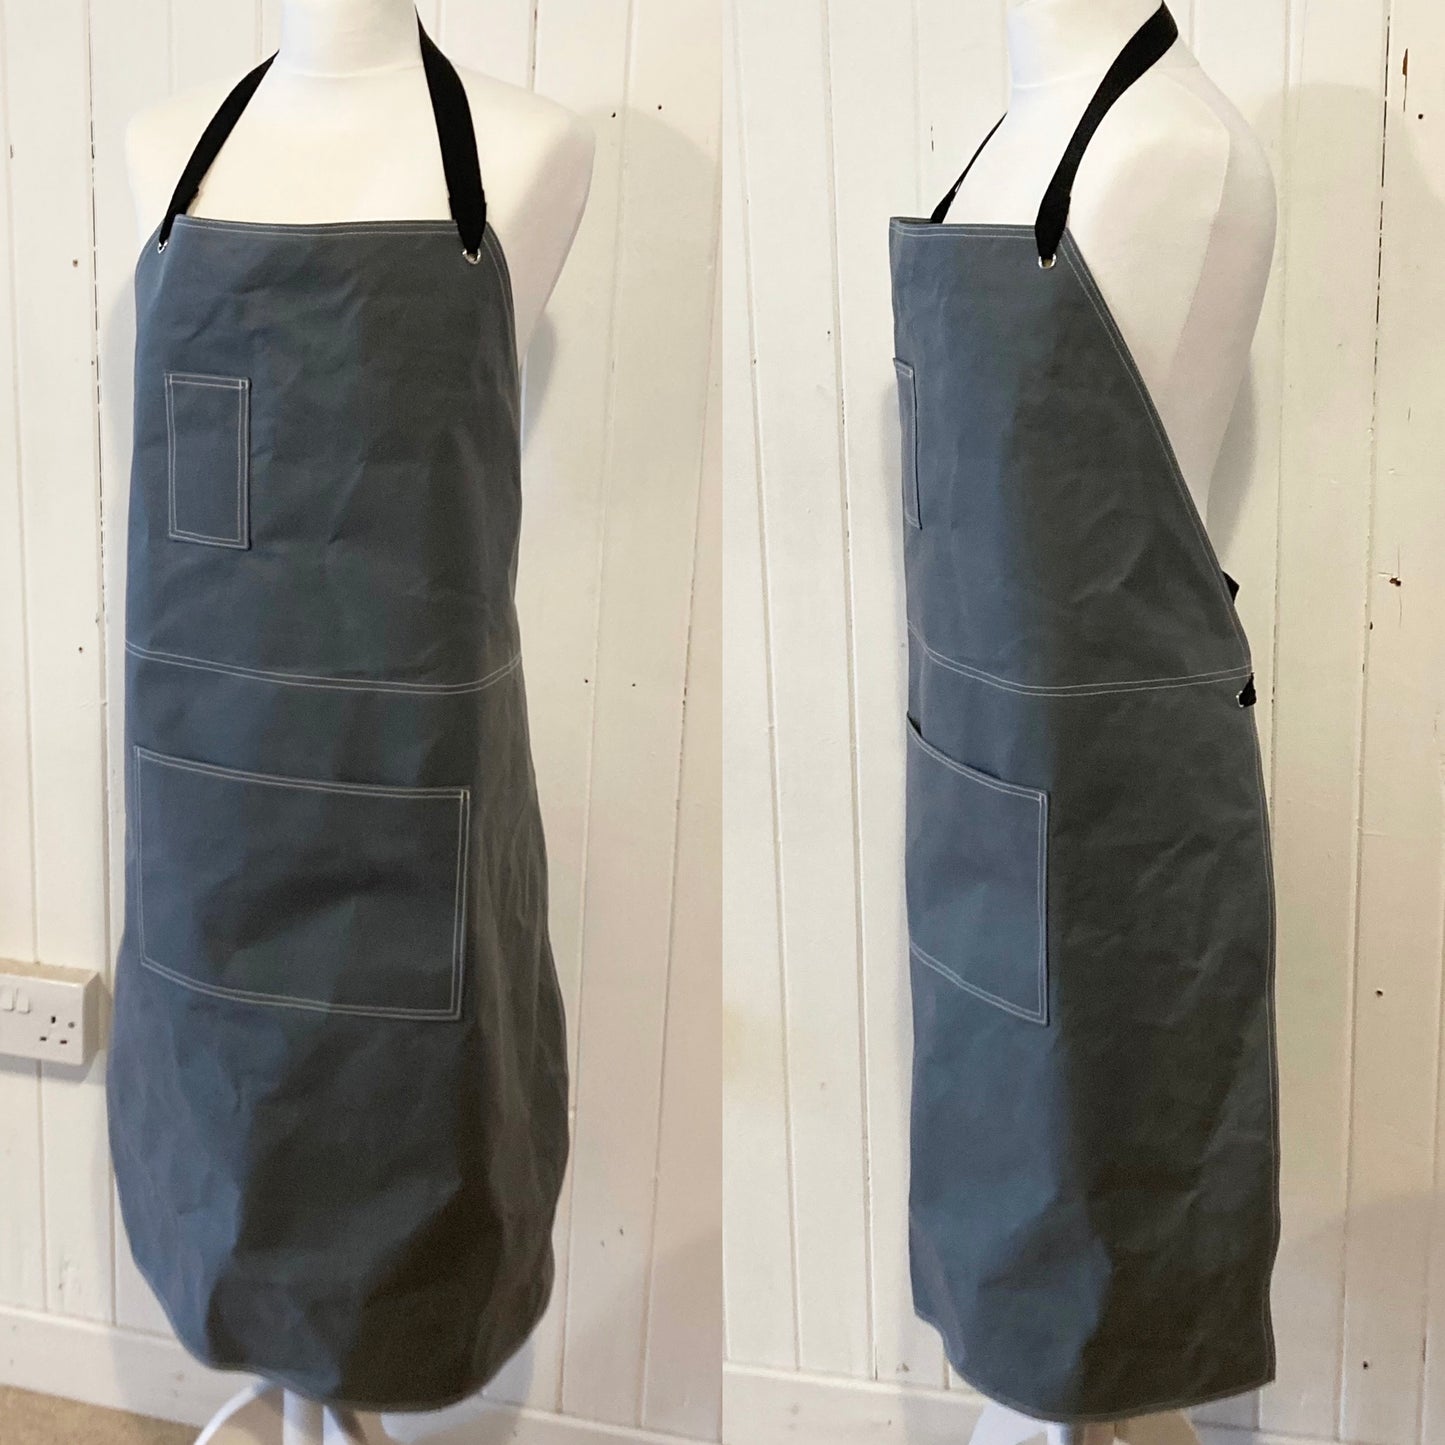 workwear oilskin apron - dark brown